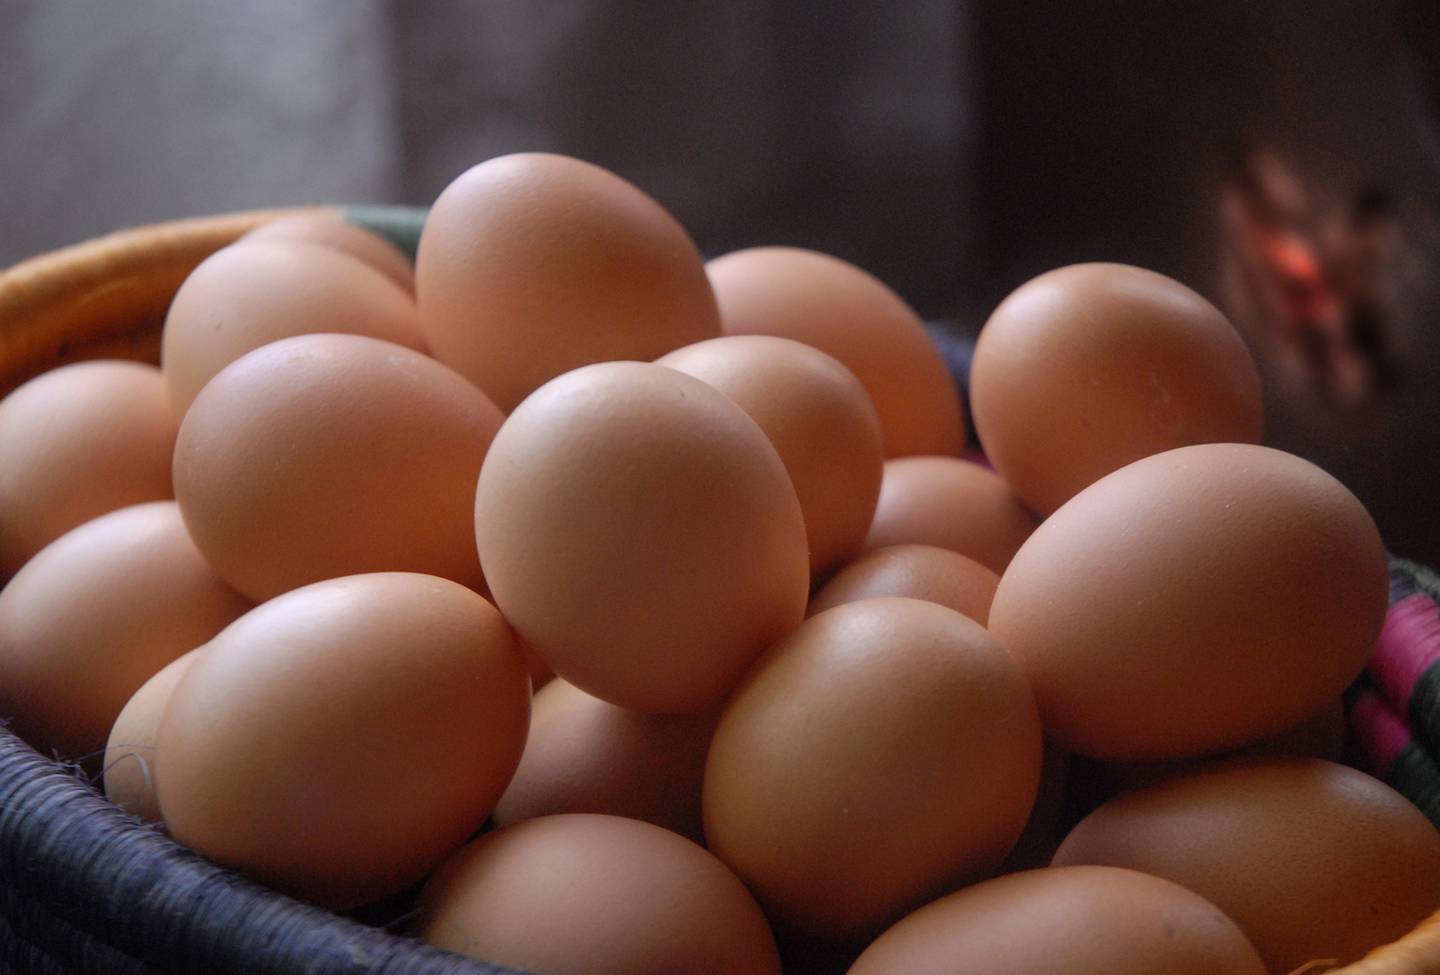 El Centro Nacional de Ciencias y Tecnología de Alimentos (CITA) de la UCR realizó un estudio de los huevos convencionales y de pastoreo, en el cual se demostró que sí hay diferencias en color, sabor y contaminación.